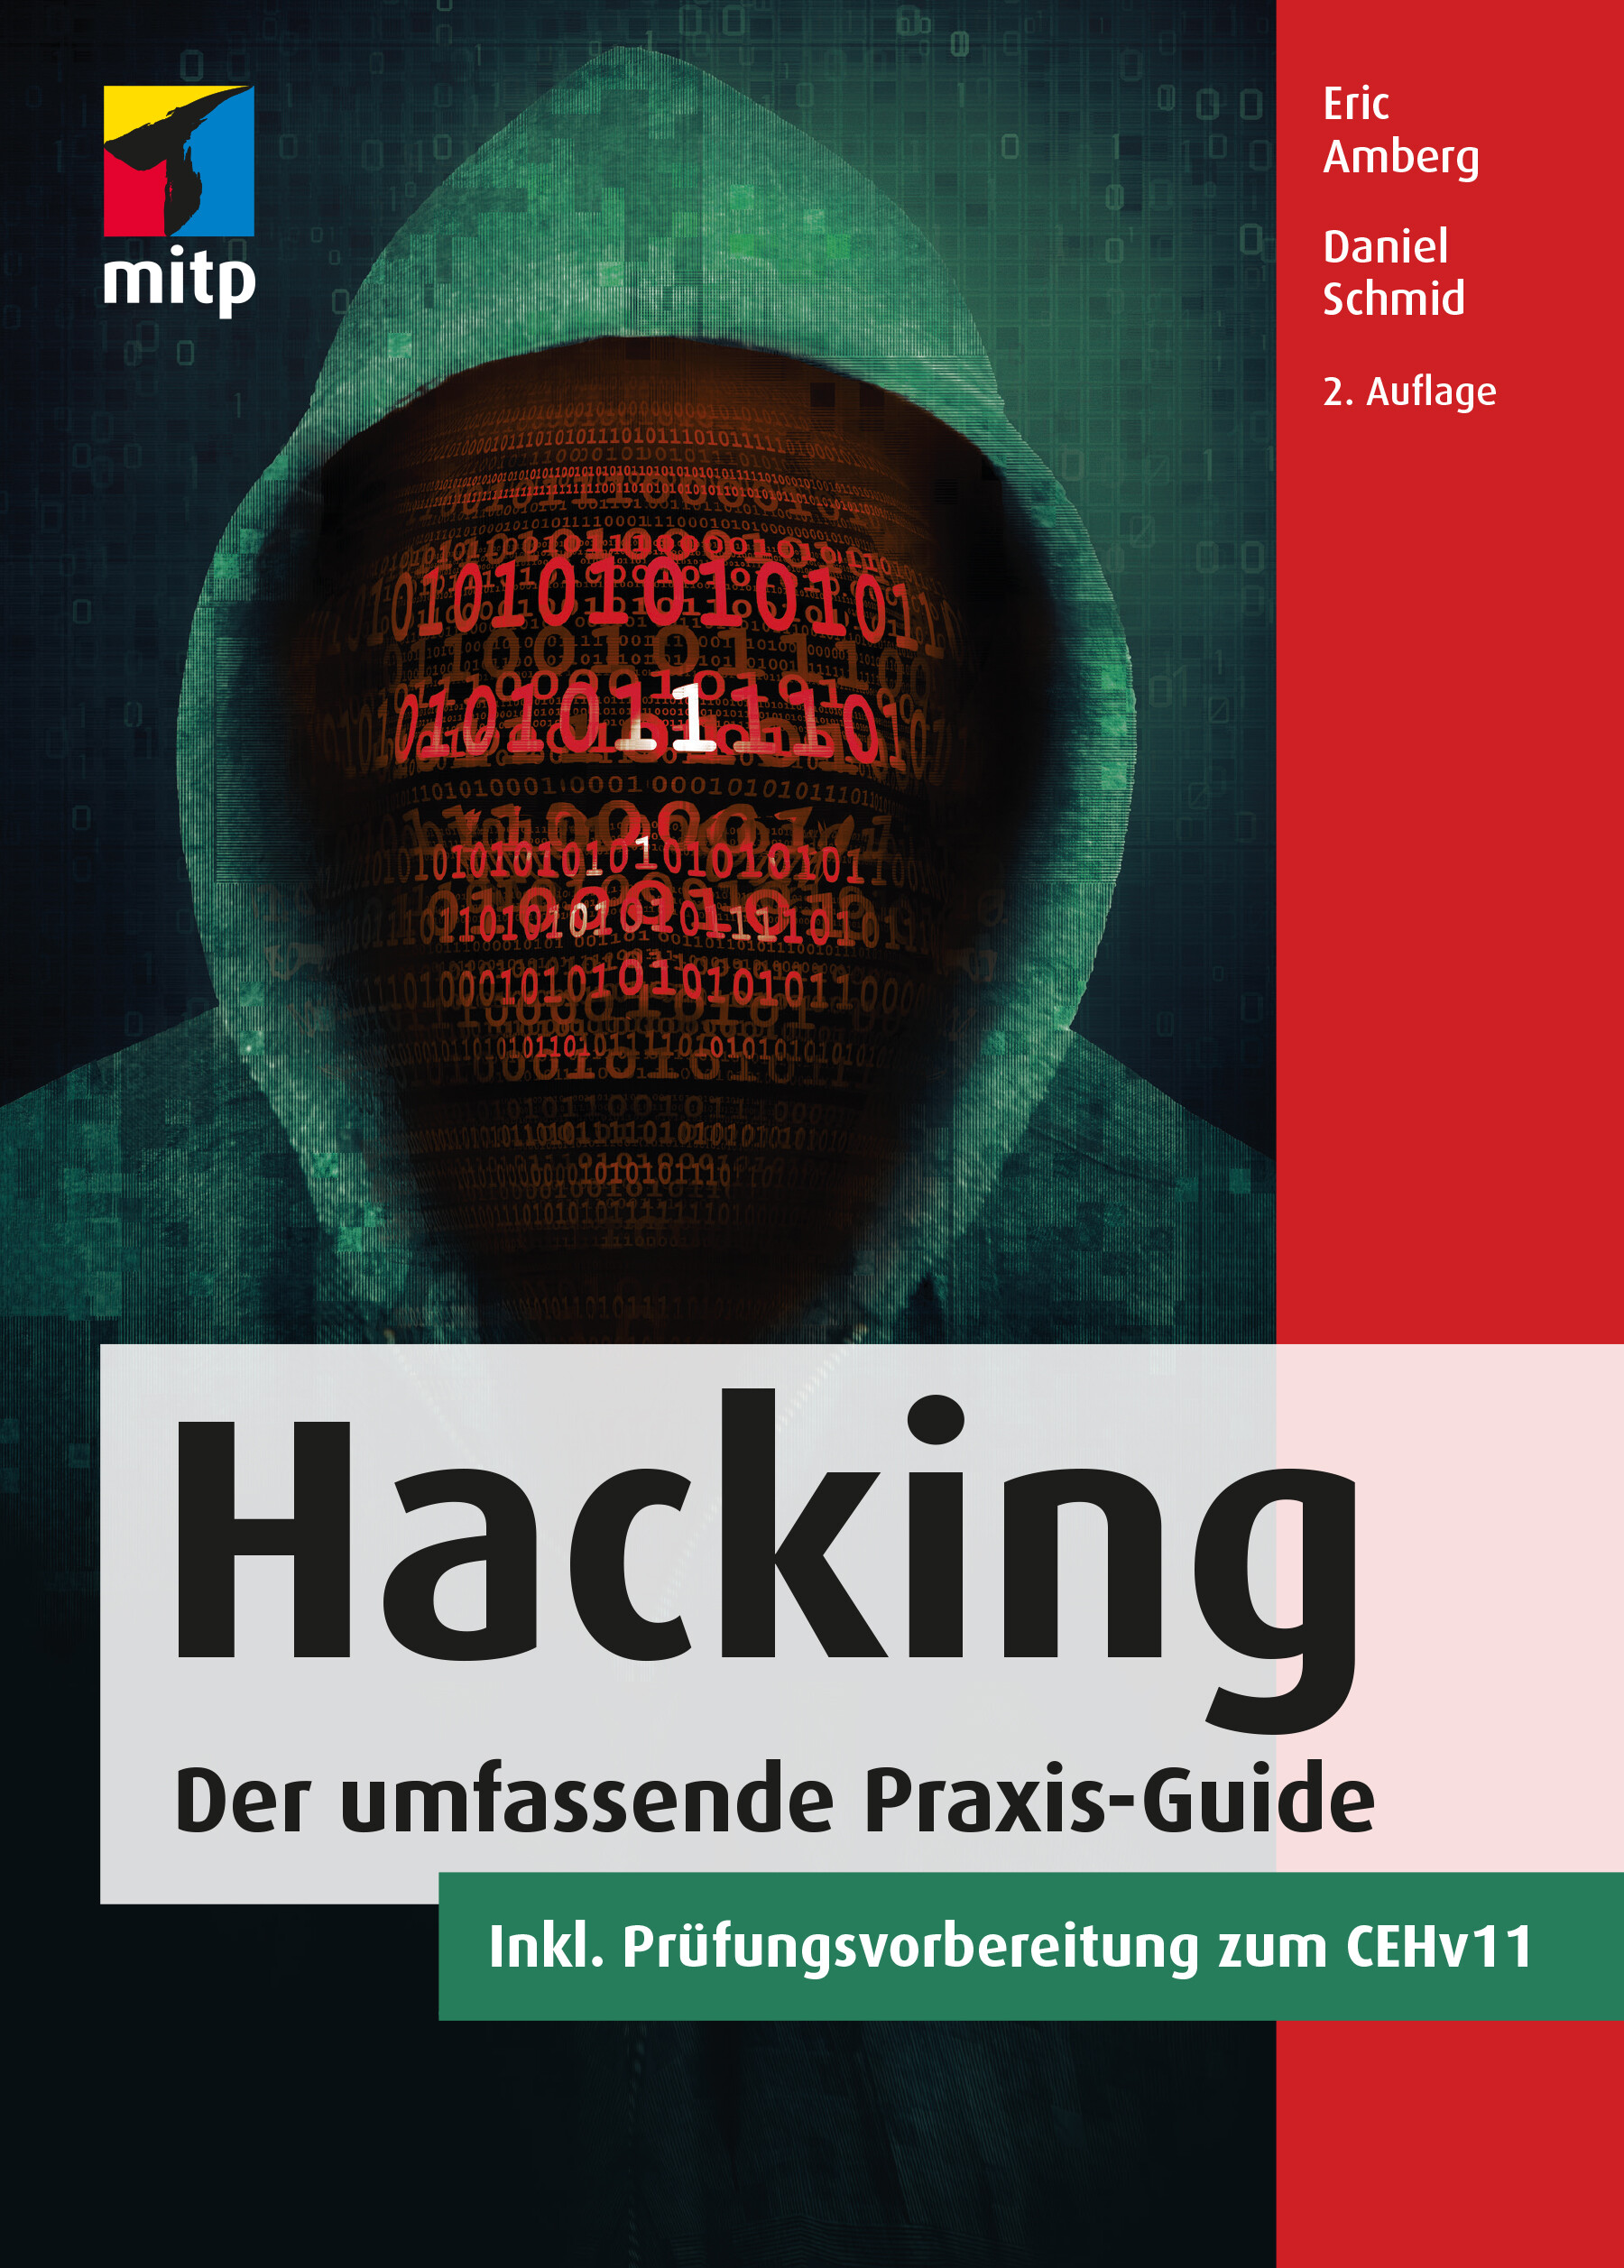 Hacking - Der umfassende Praxis-Guide (2. Auflg.)